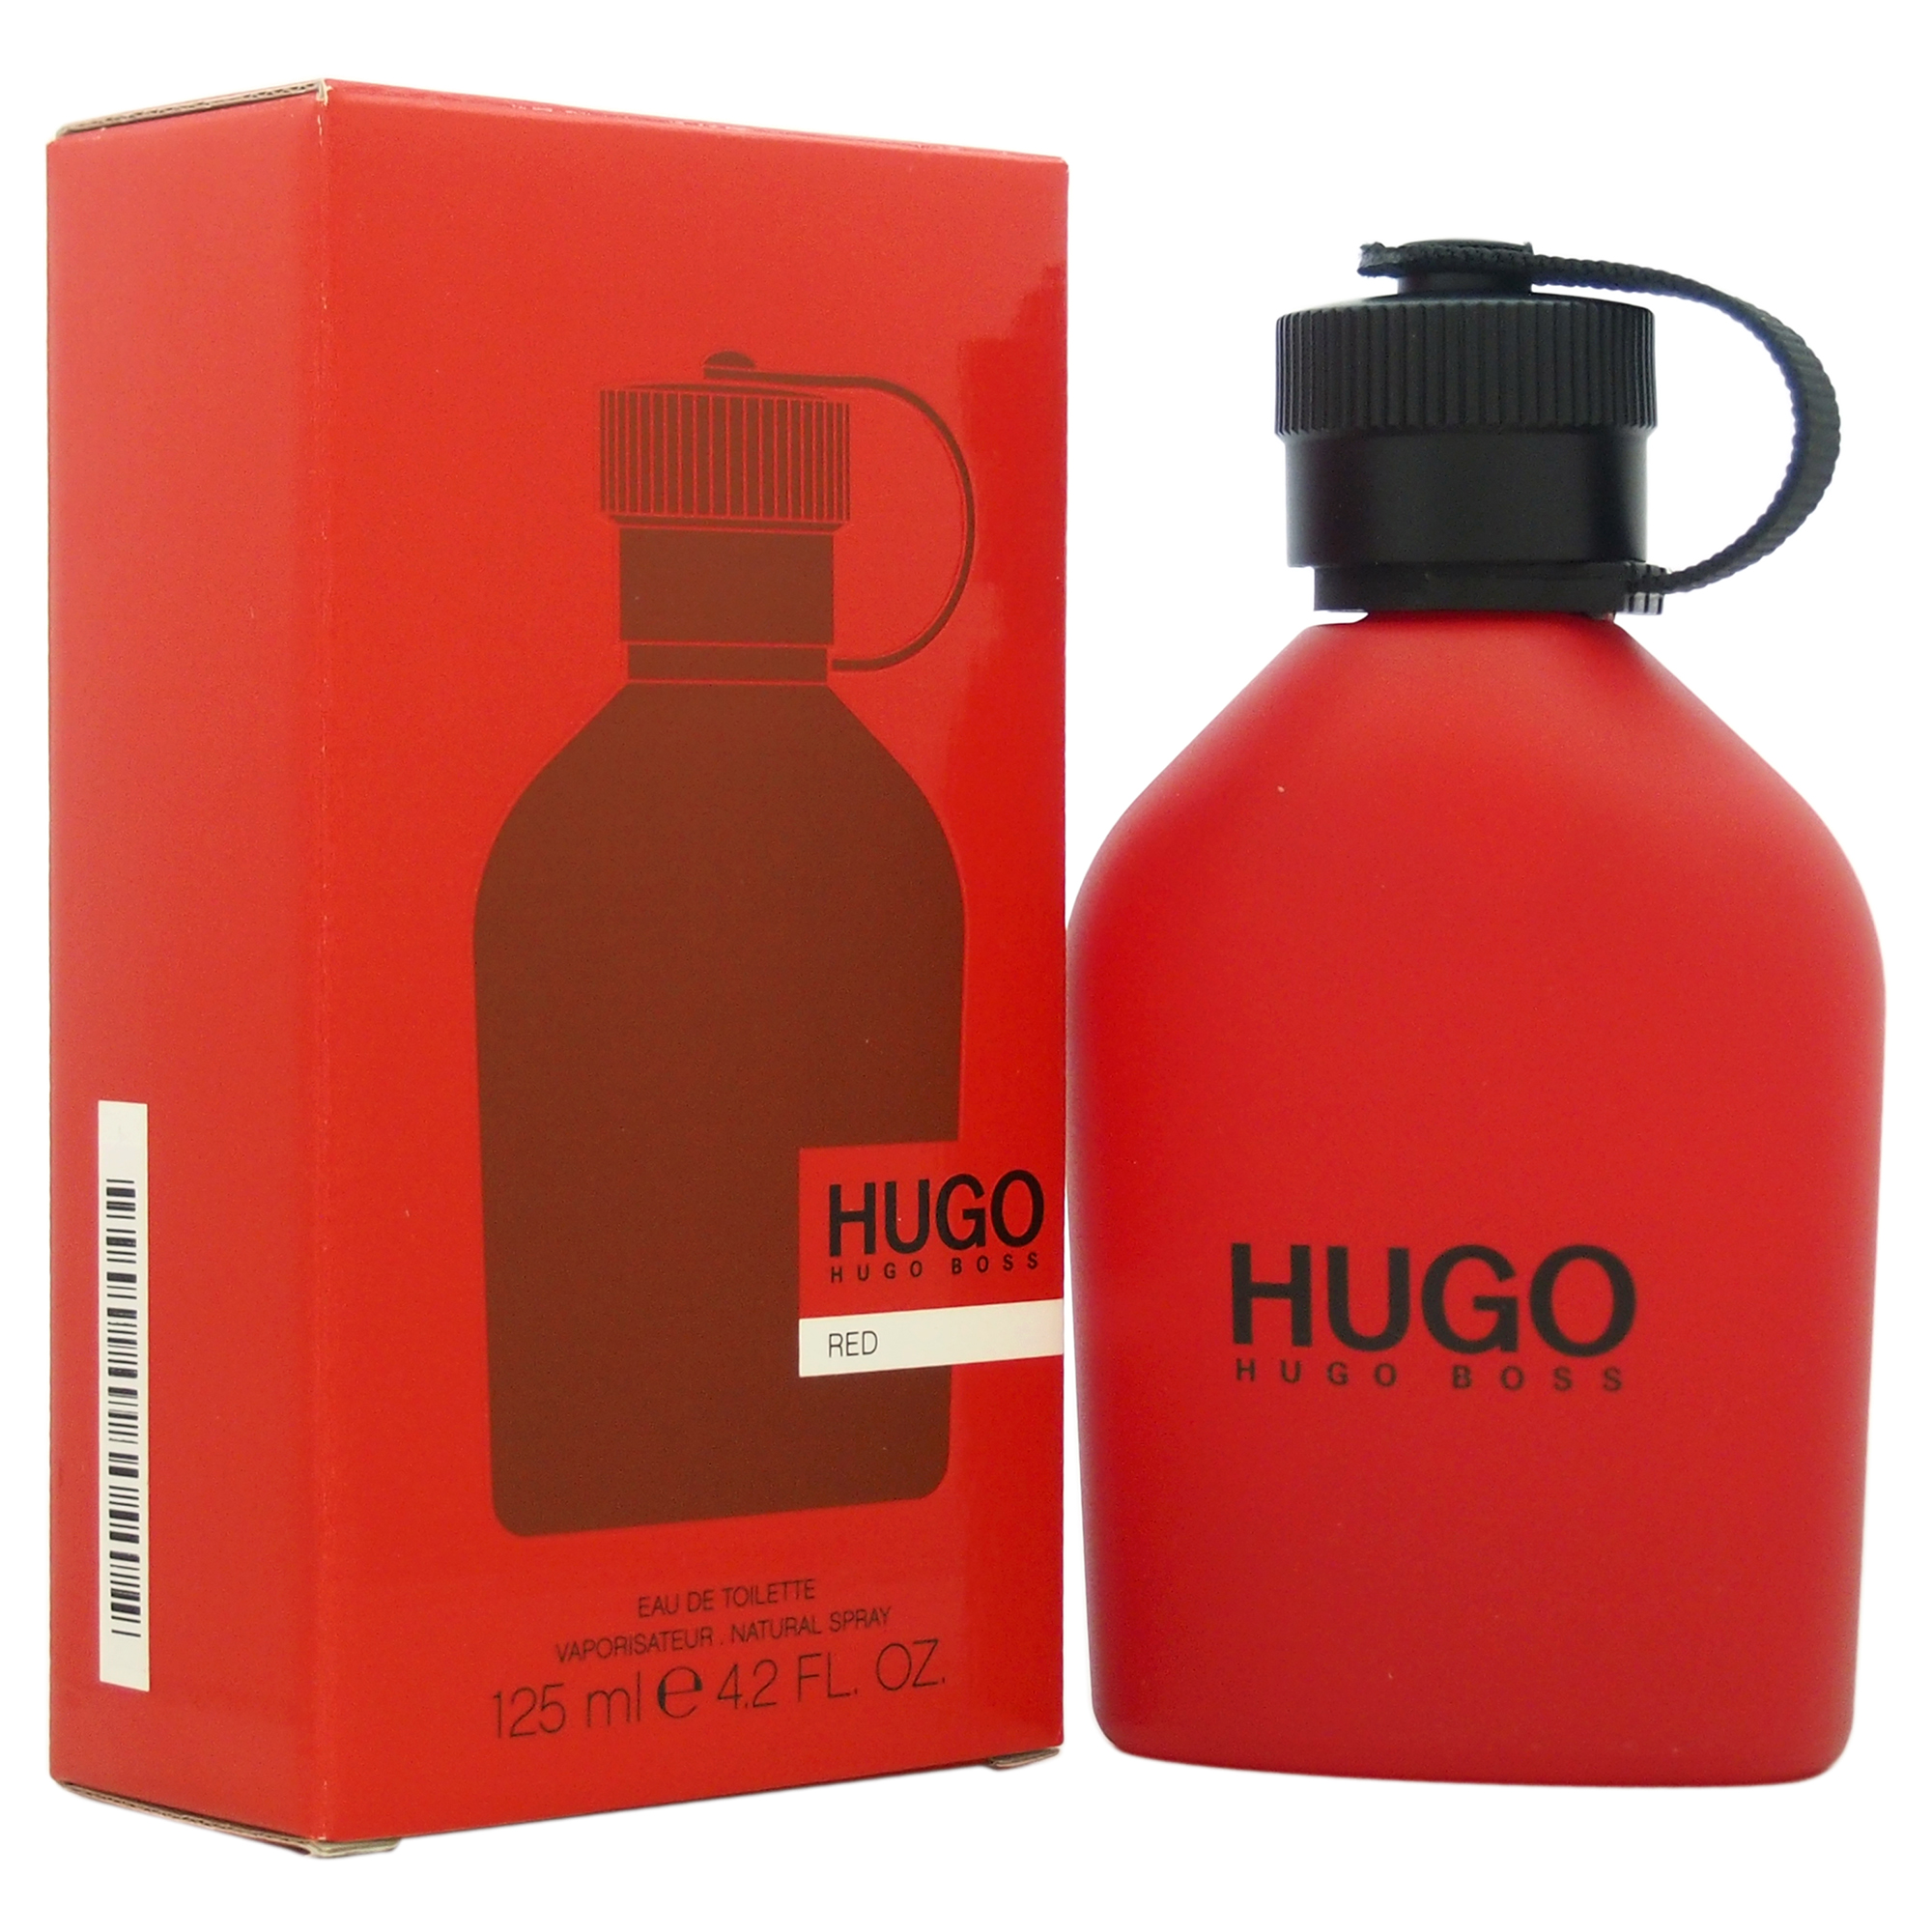 Hugo Boss Hugo Red. Хуго босс рыжий. Hugo Boss кроссовки мужские красные.